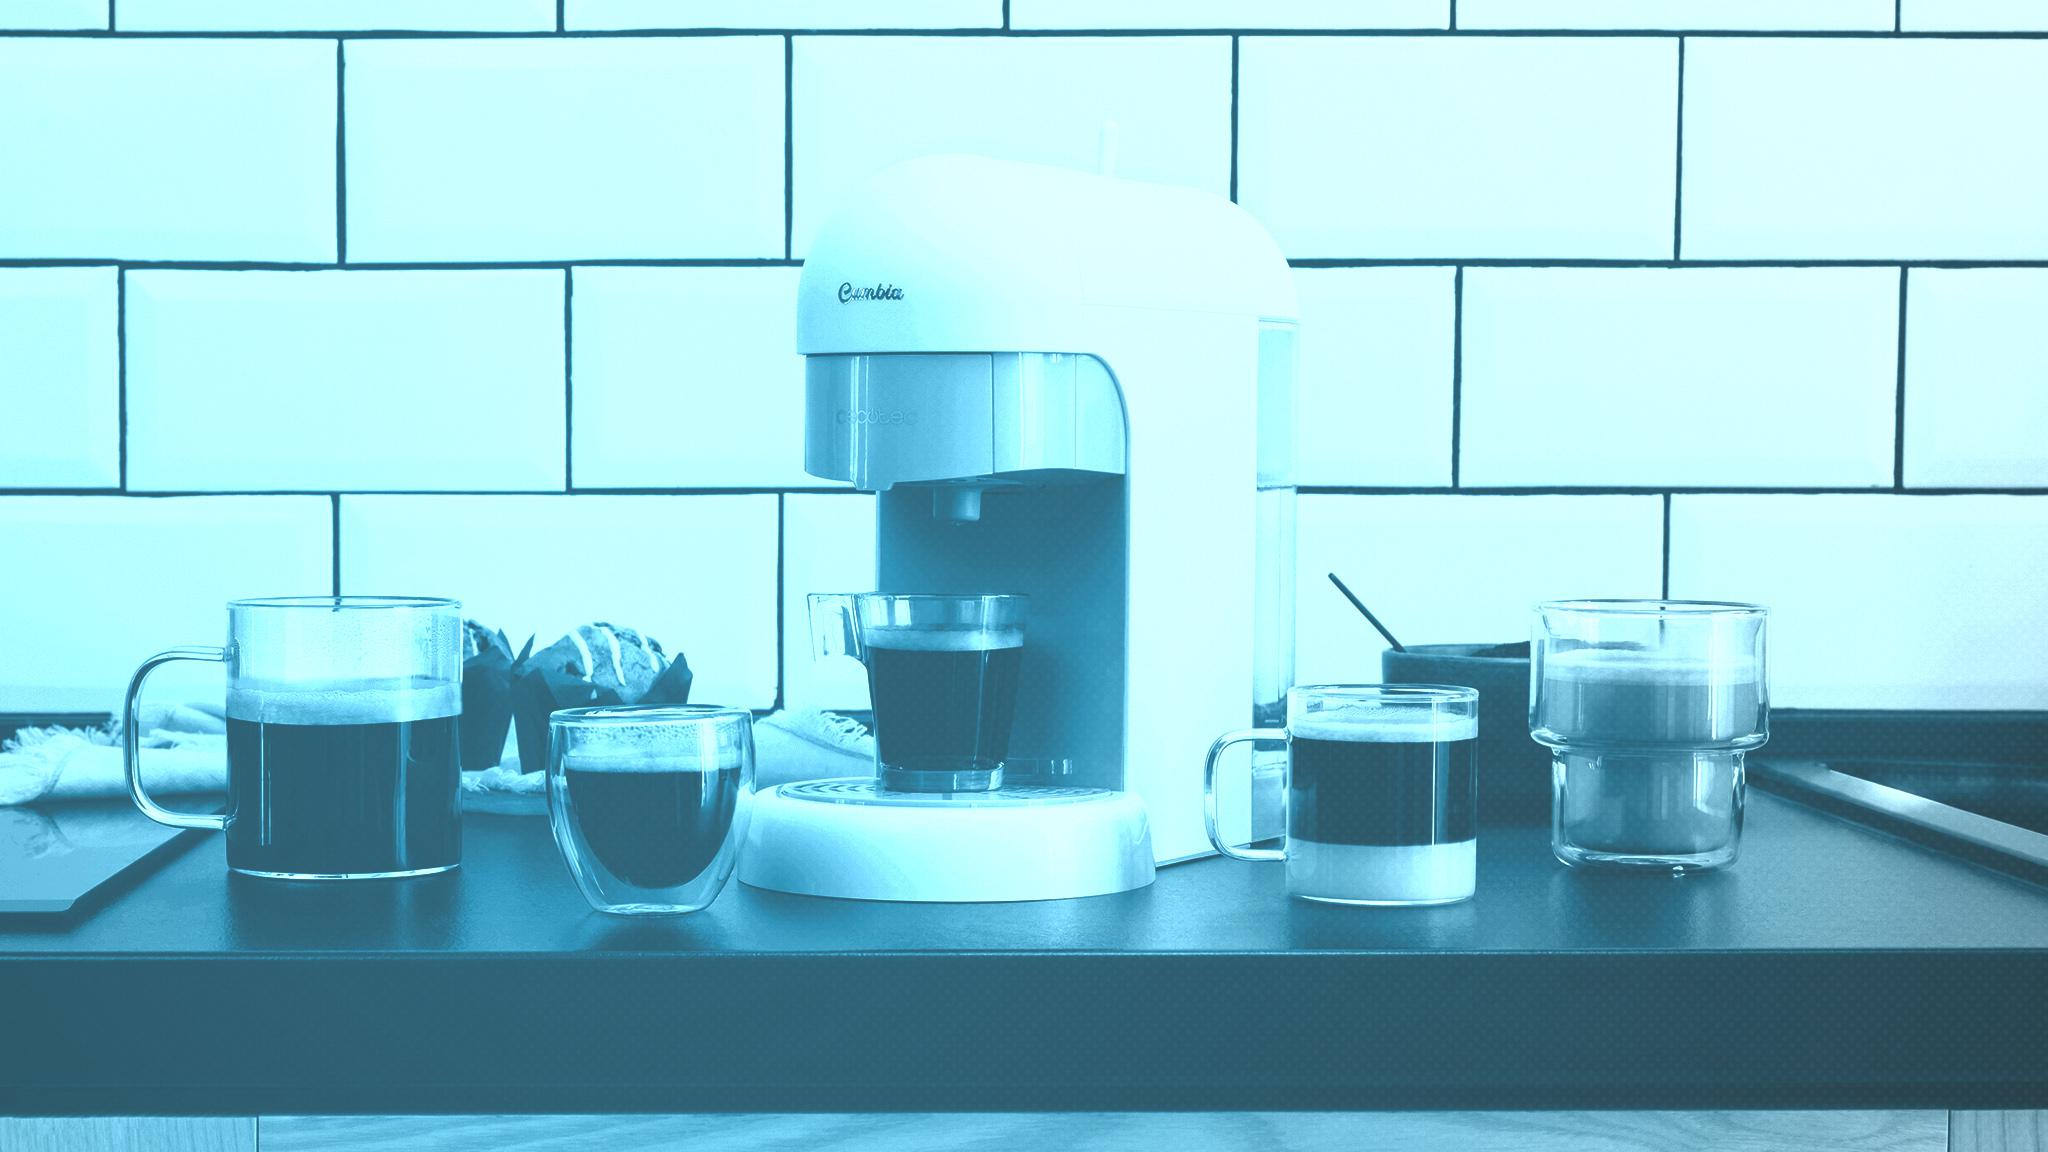 Cafetera eléctrica para espresso con vaporizador orientable y depósito de  café con molinillo 19 bar Cumbia Cecotec